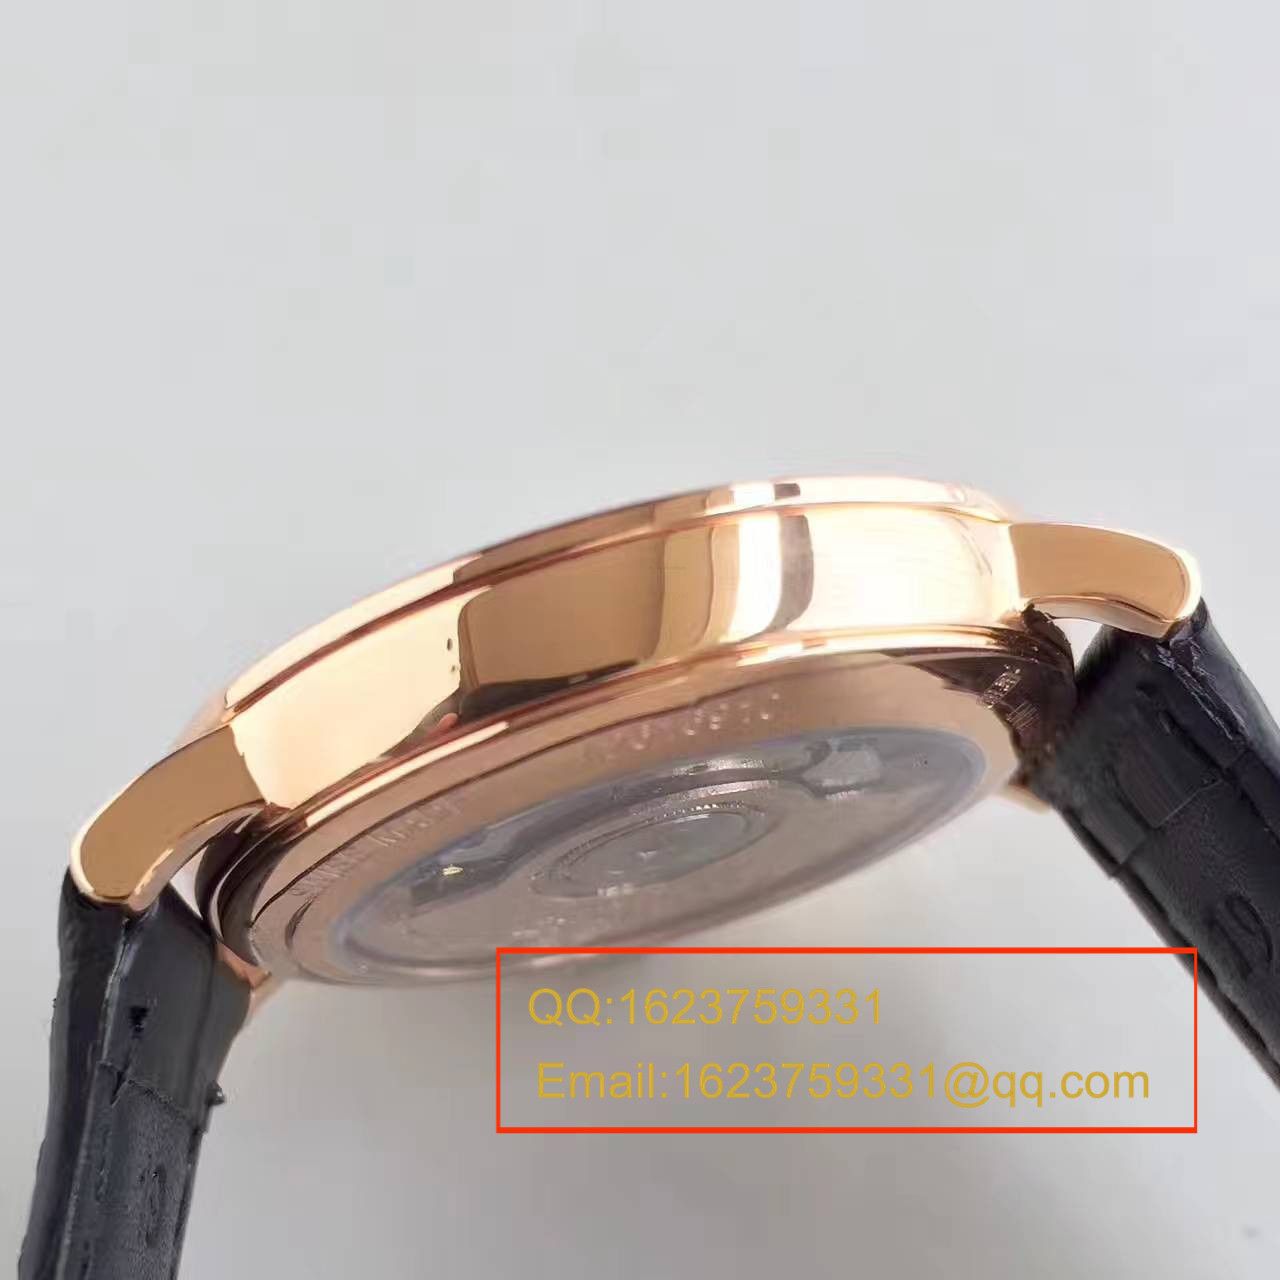 【台湾厂一比一超A精仿手表】浪琴制表传统博雅系列L4.787.8.11.0腕表 / L092